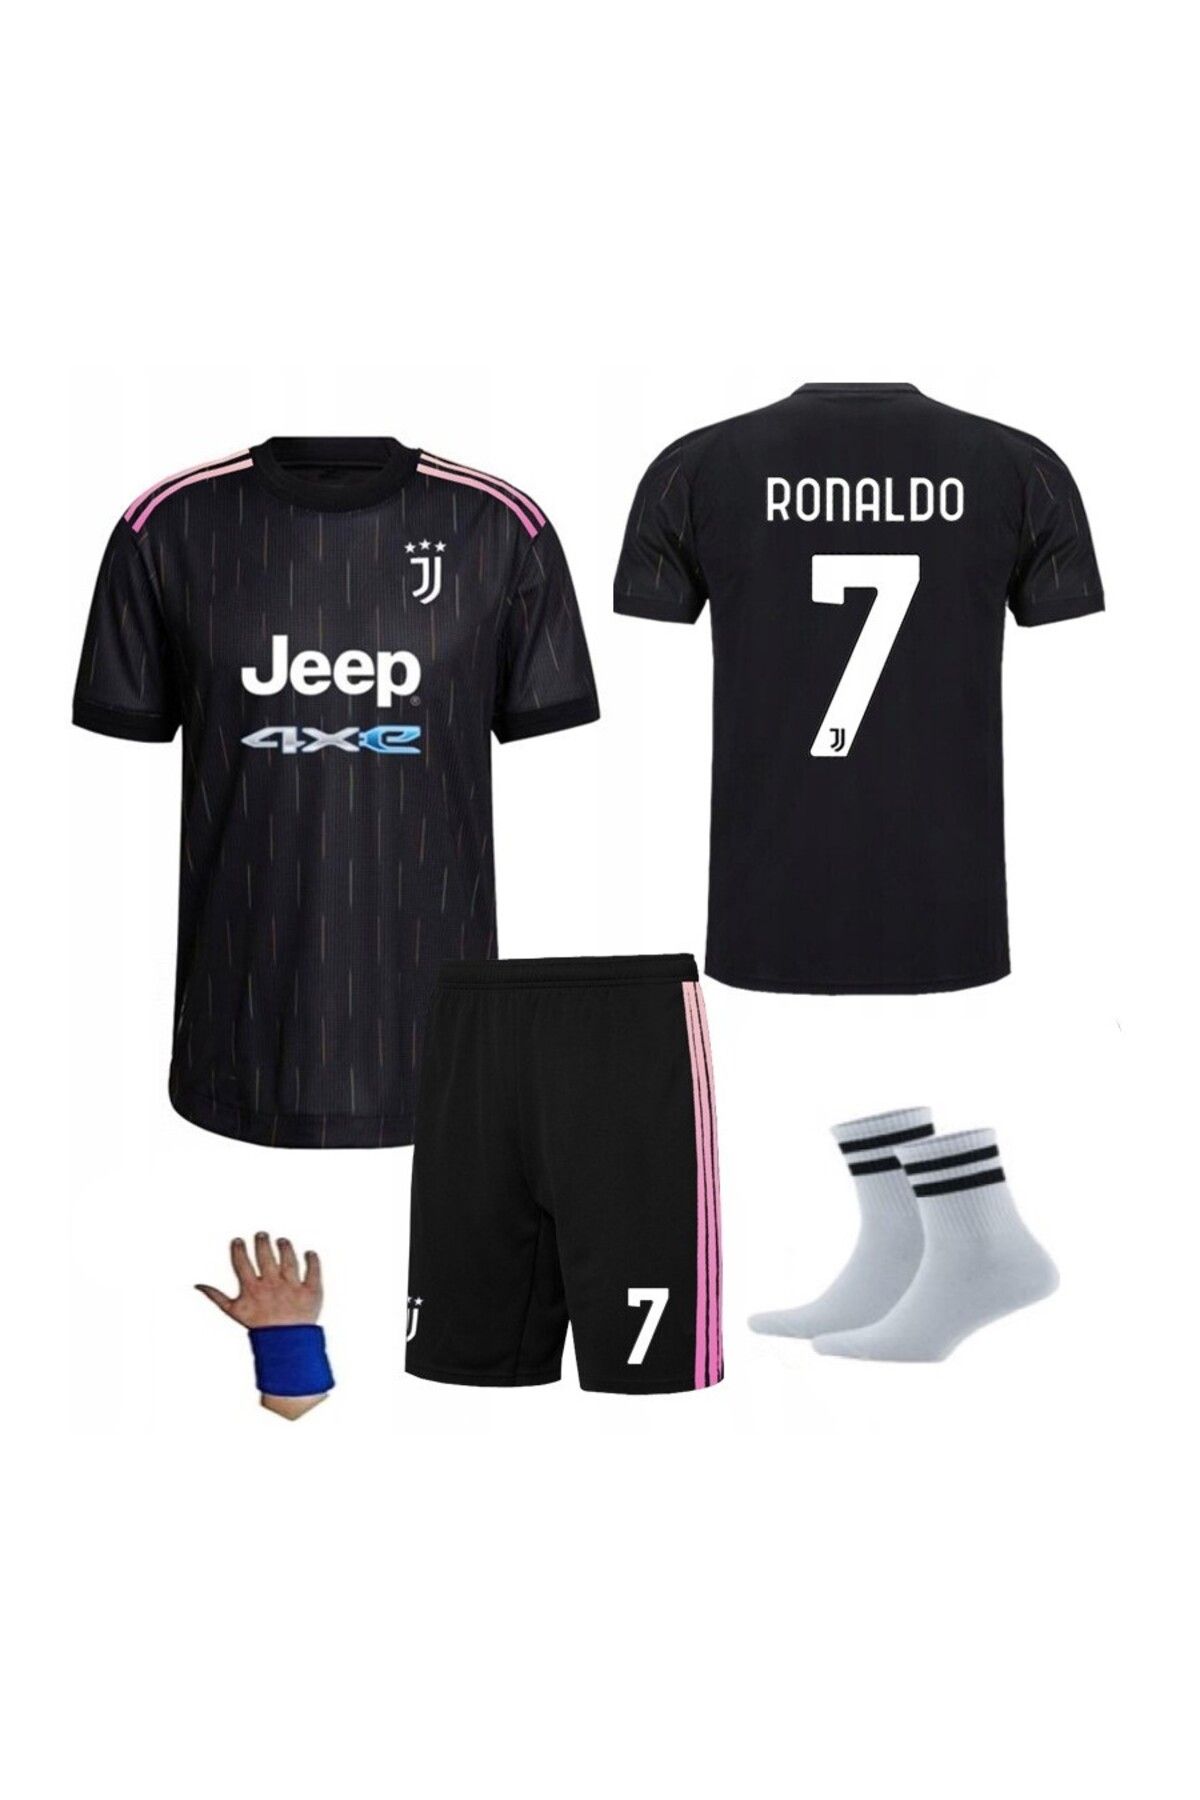 yenteks Ronaldo Juventus 2021 Siyah 4 Parça Çocuk Forma Takımı Forma Şort Çorap Bileklik